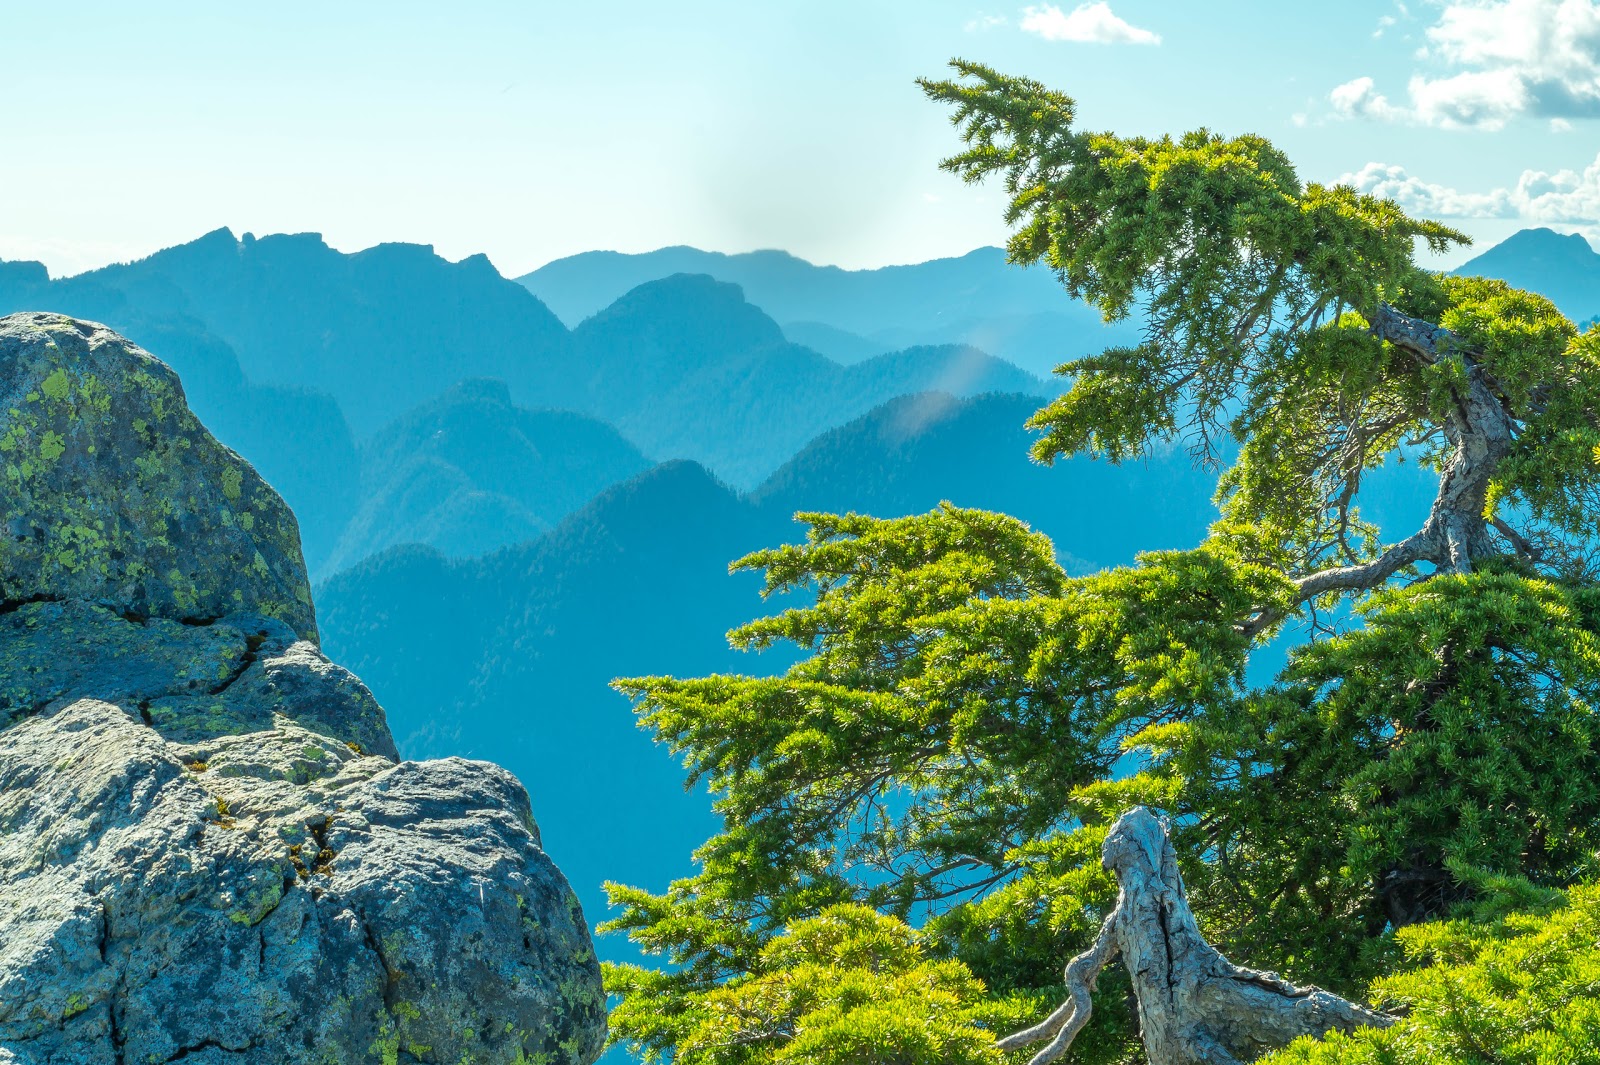 Горы на севере благодаря дымке окрашены в ярко синий цвет. На их фоне сочная зелень молодых альпийских елей выглядит ослепительно.